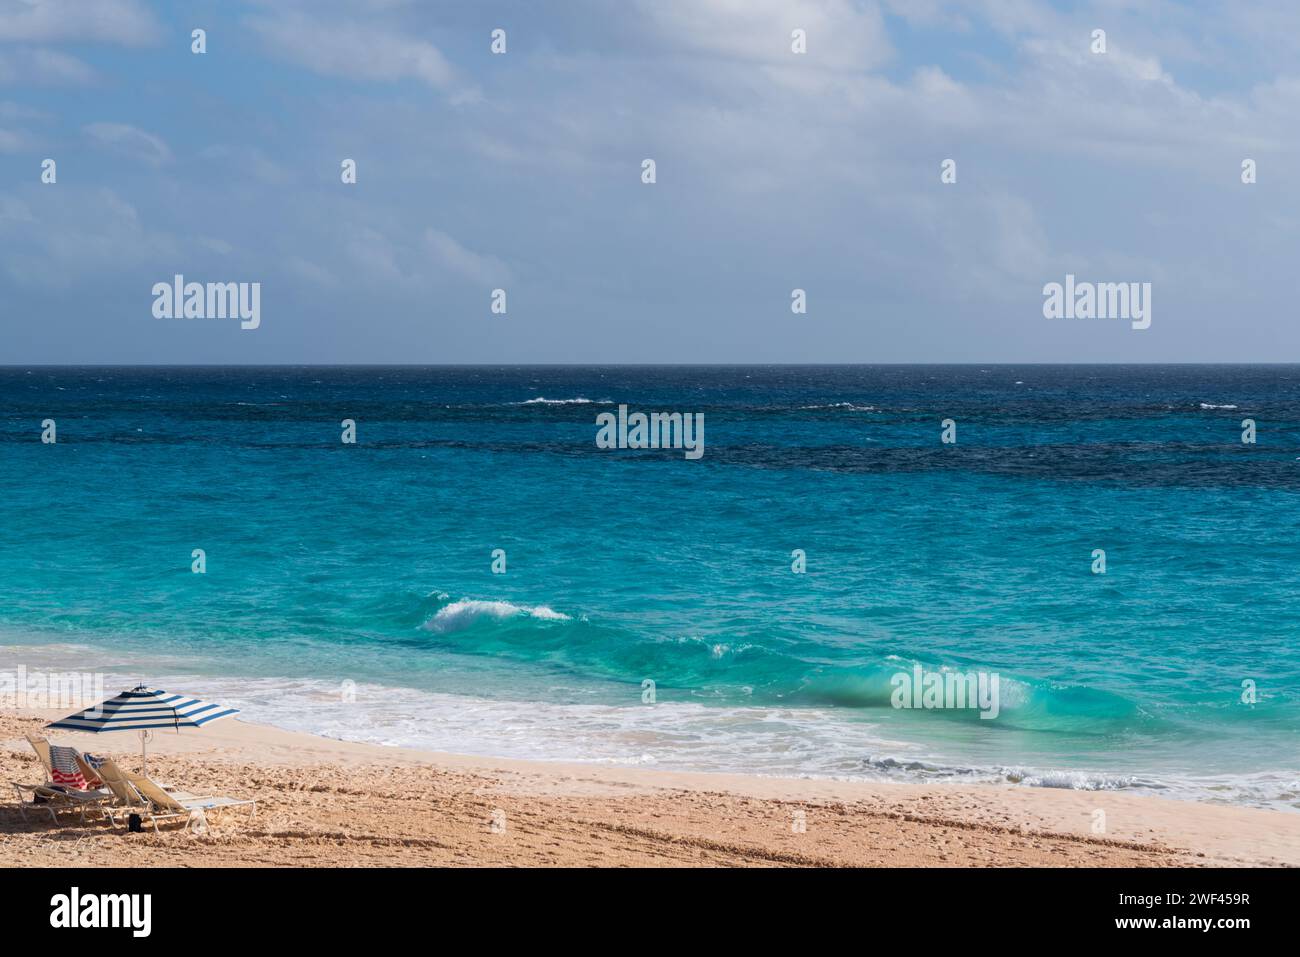 Immergiti nella bellezza del paradiso costiero delle Bermuda, dove le spiagge sabbiose incontrano la bellezza azzurra dell'oceano in una fuga tropicale di beatitudine marina. Foto Stock